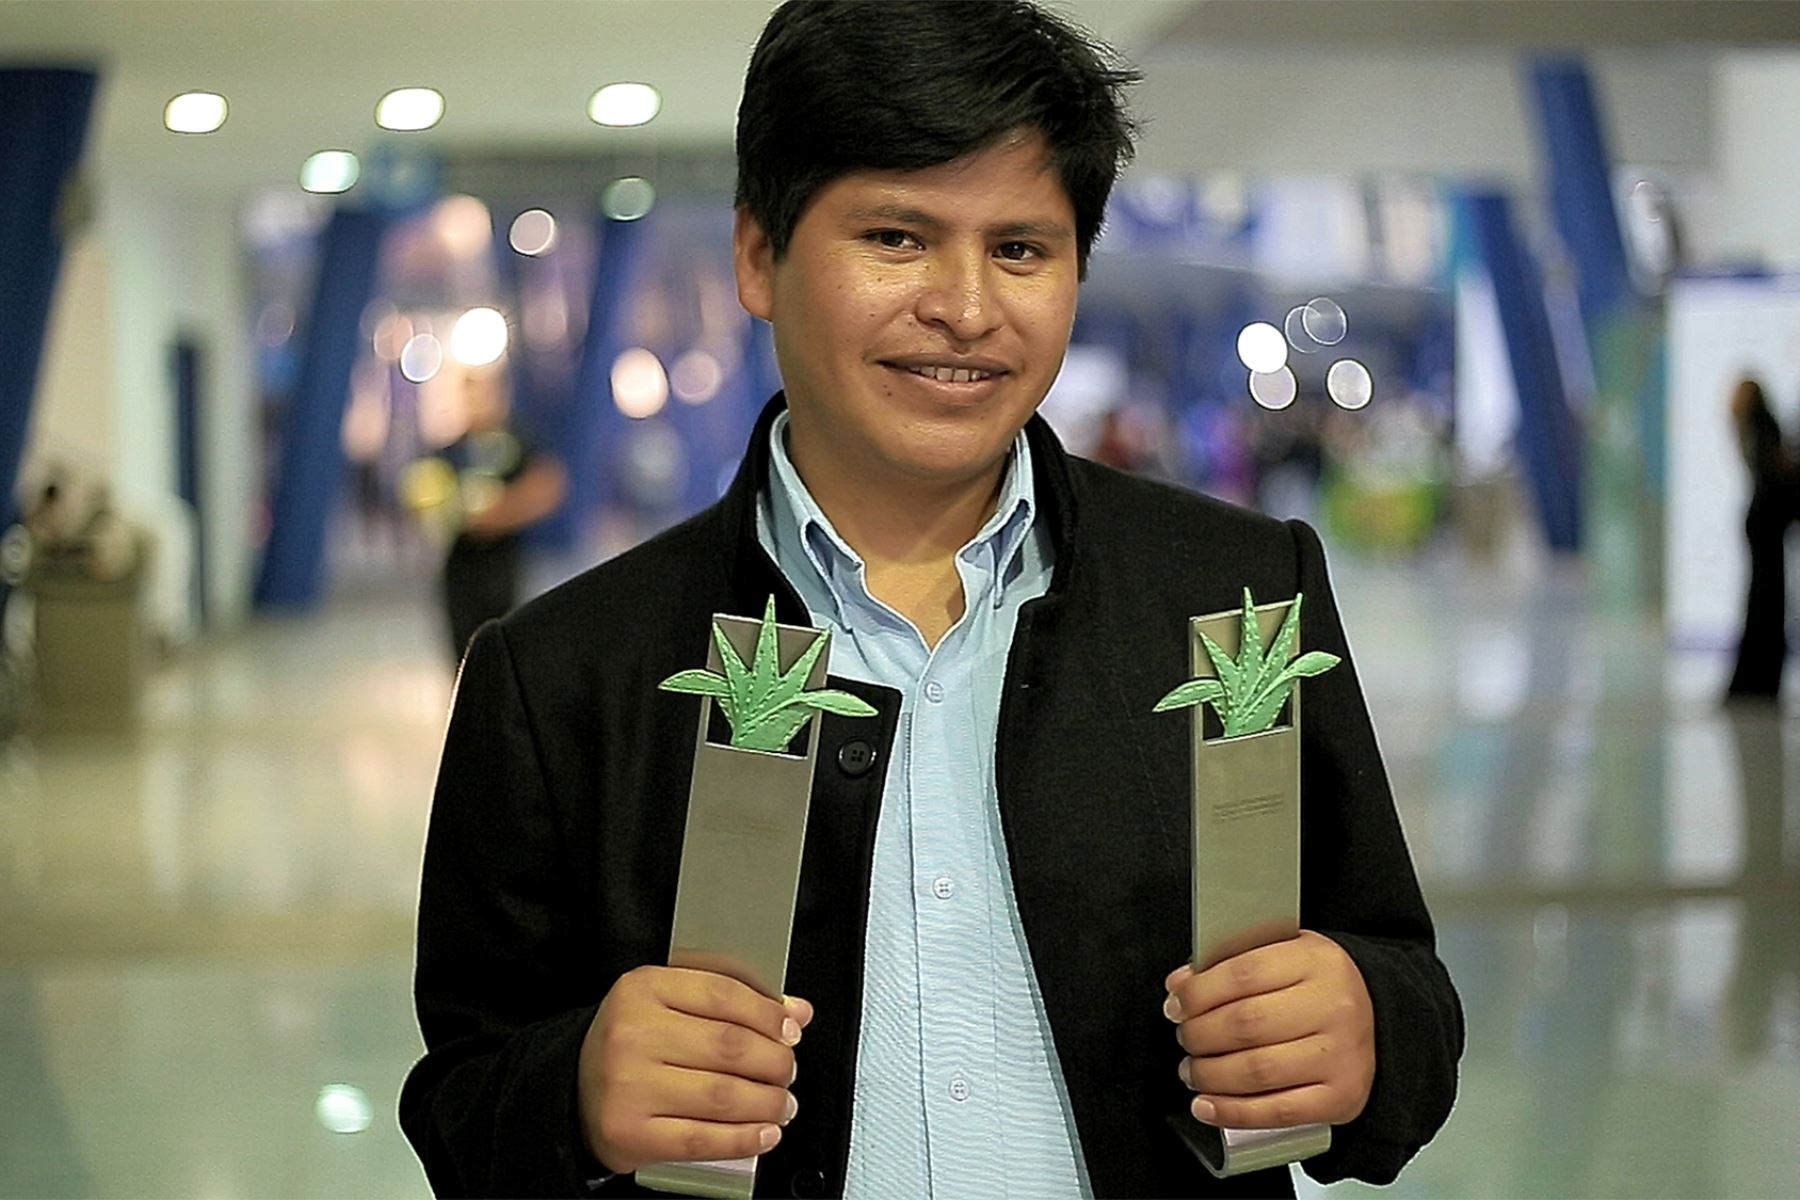 Óscar Catacora con  su primera película y ya ha cosechado éxito: ganó en el Festival de Cine de Guadalajara (México) los premios a Mejor Director Joven, Mejor Ópera Prima y Mejor Fotografía, y será postulada por Perú a los Oscar y a los Goya como mejor película extranjera e iberoamericana de 2019.